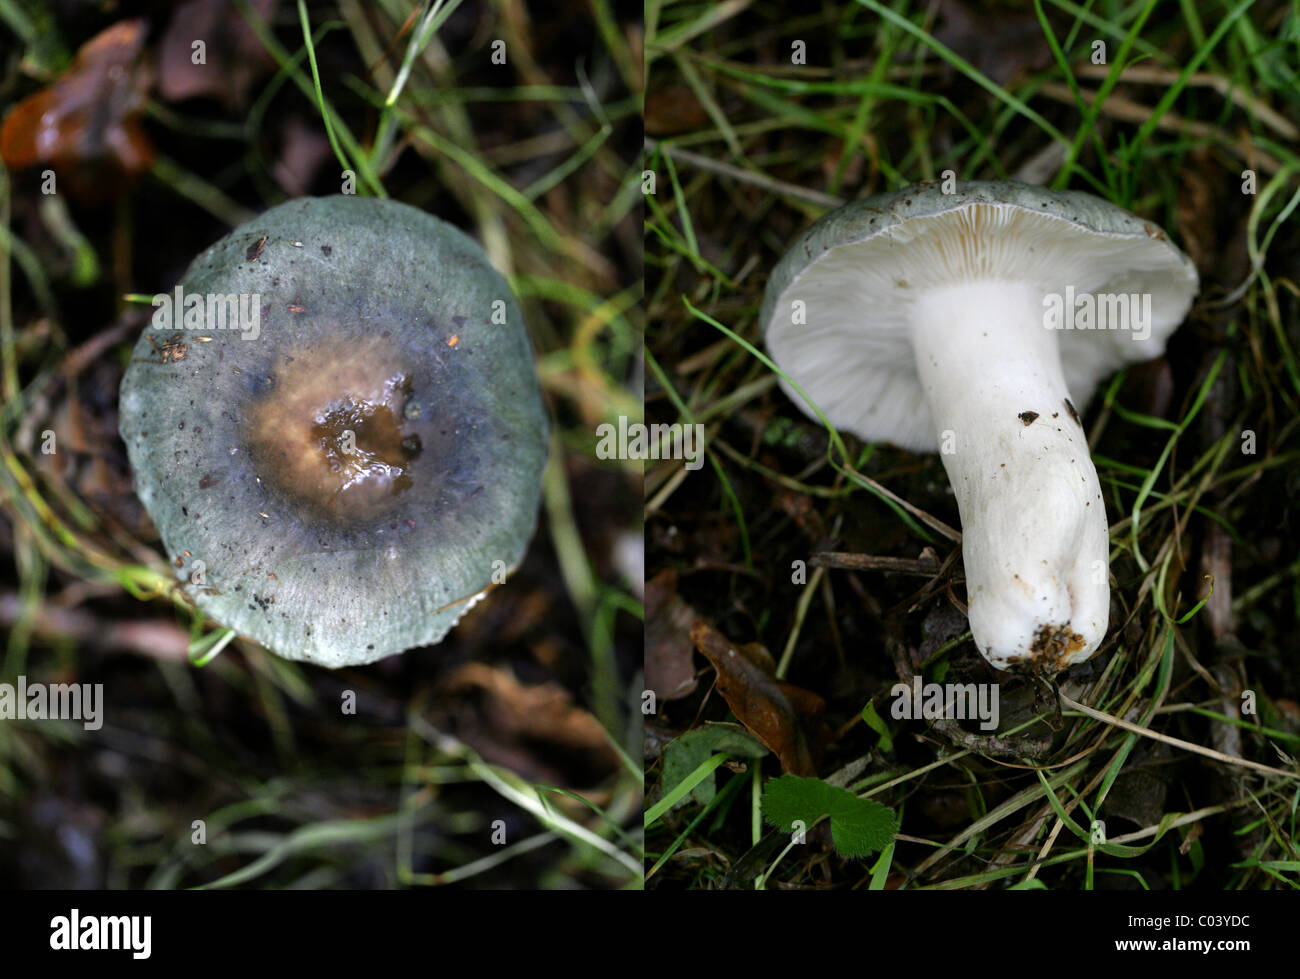 Köhler, ubling Cyanoxantha, Russulaceae. August, Berkhamsted, Hertfordshire. Zusammengesetztes Bild, 2 Fotos. Stockfoto